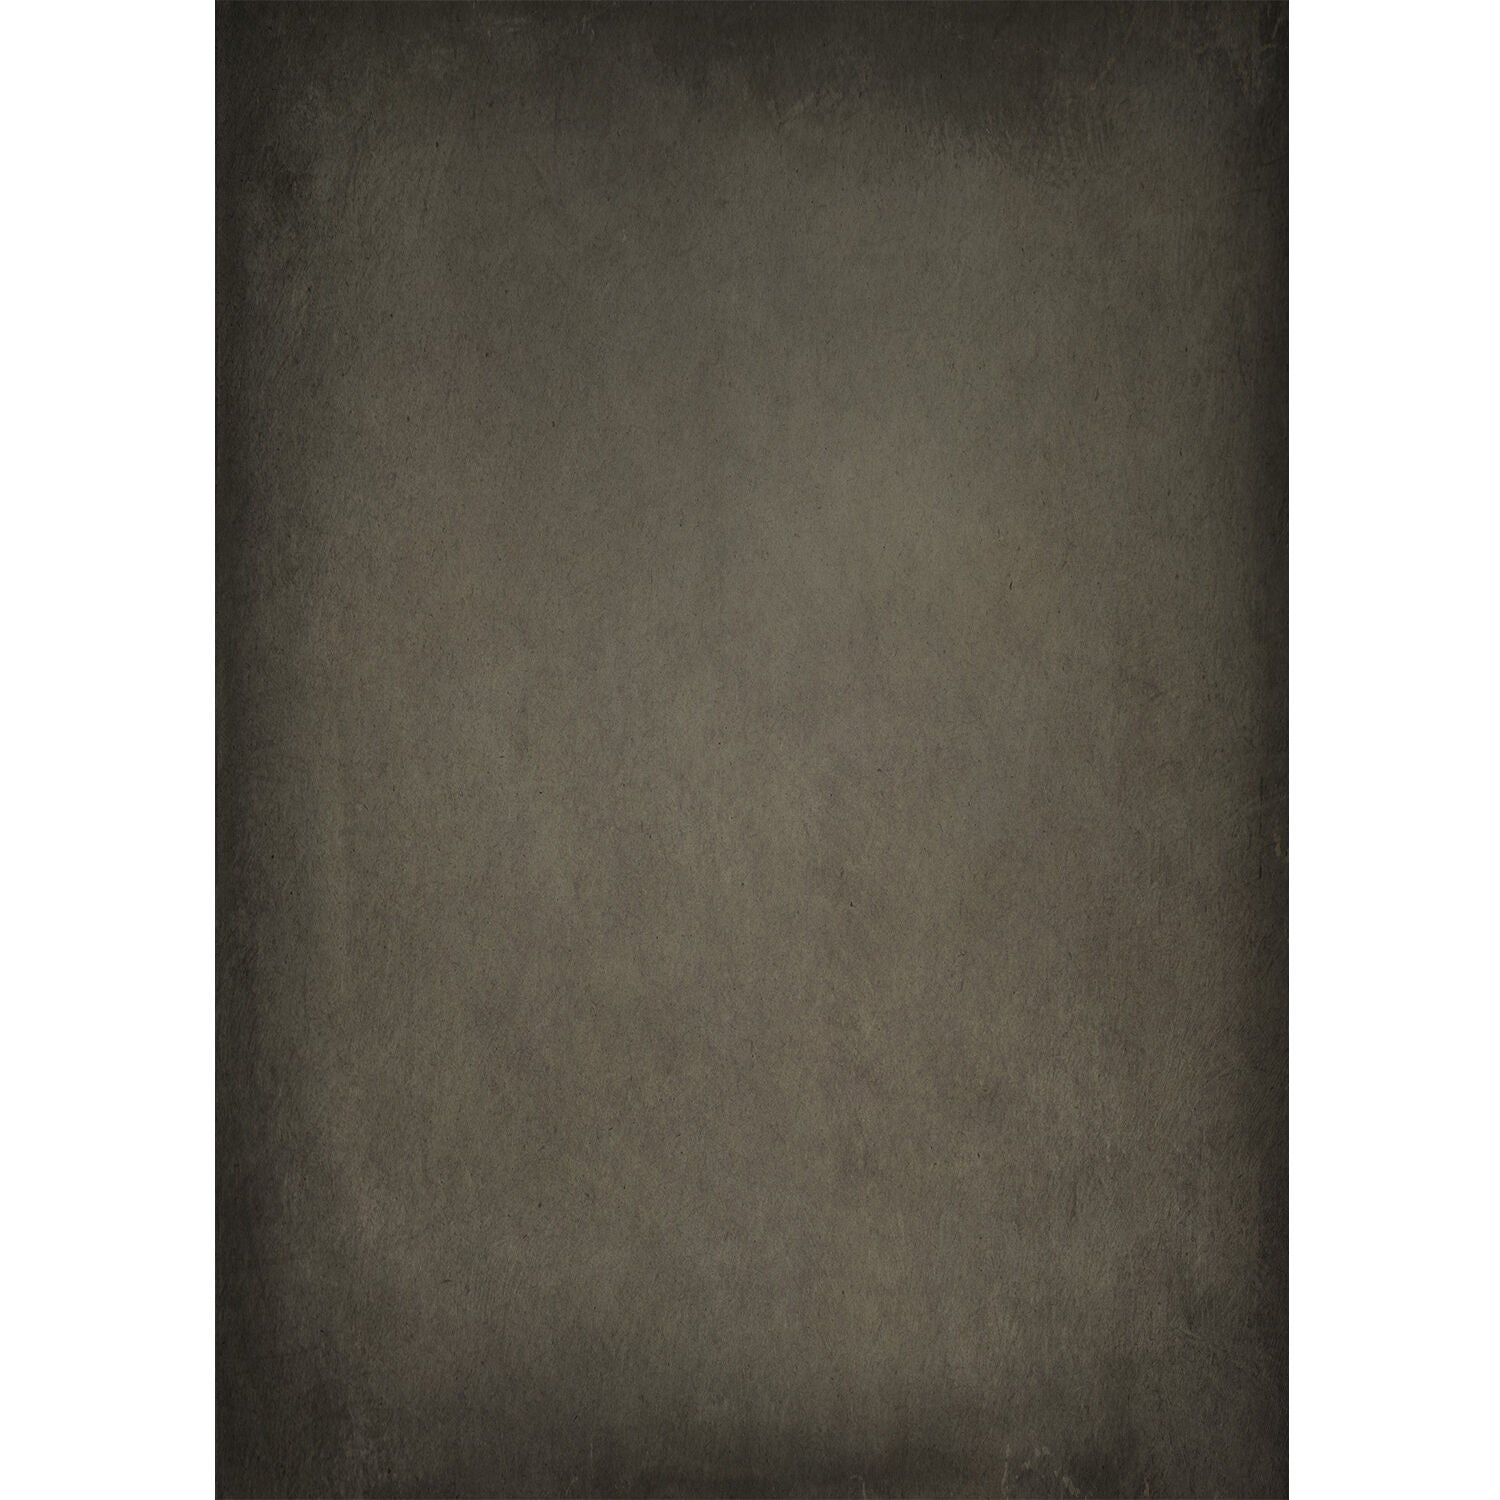 Westcott X-Drop Lightweight Canvas Backdrop - Sandstone by Joel Grimes (5' x 7')